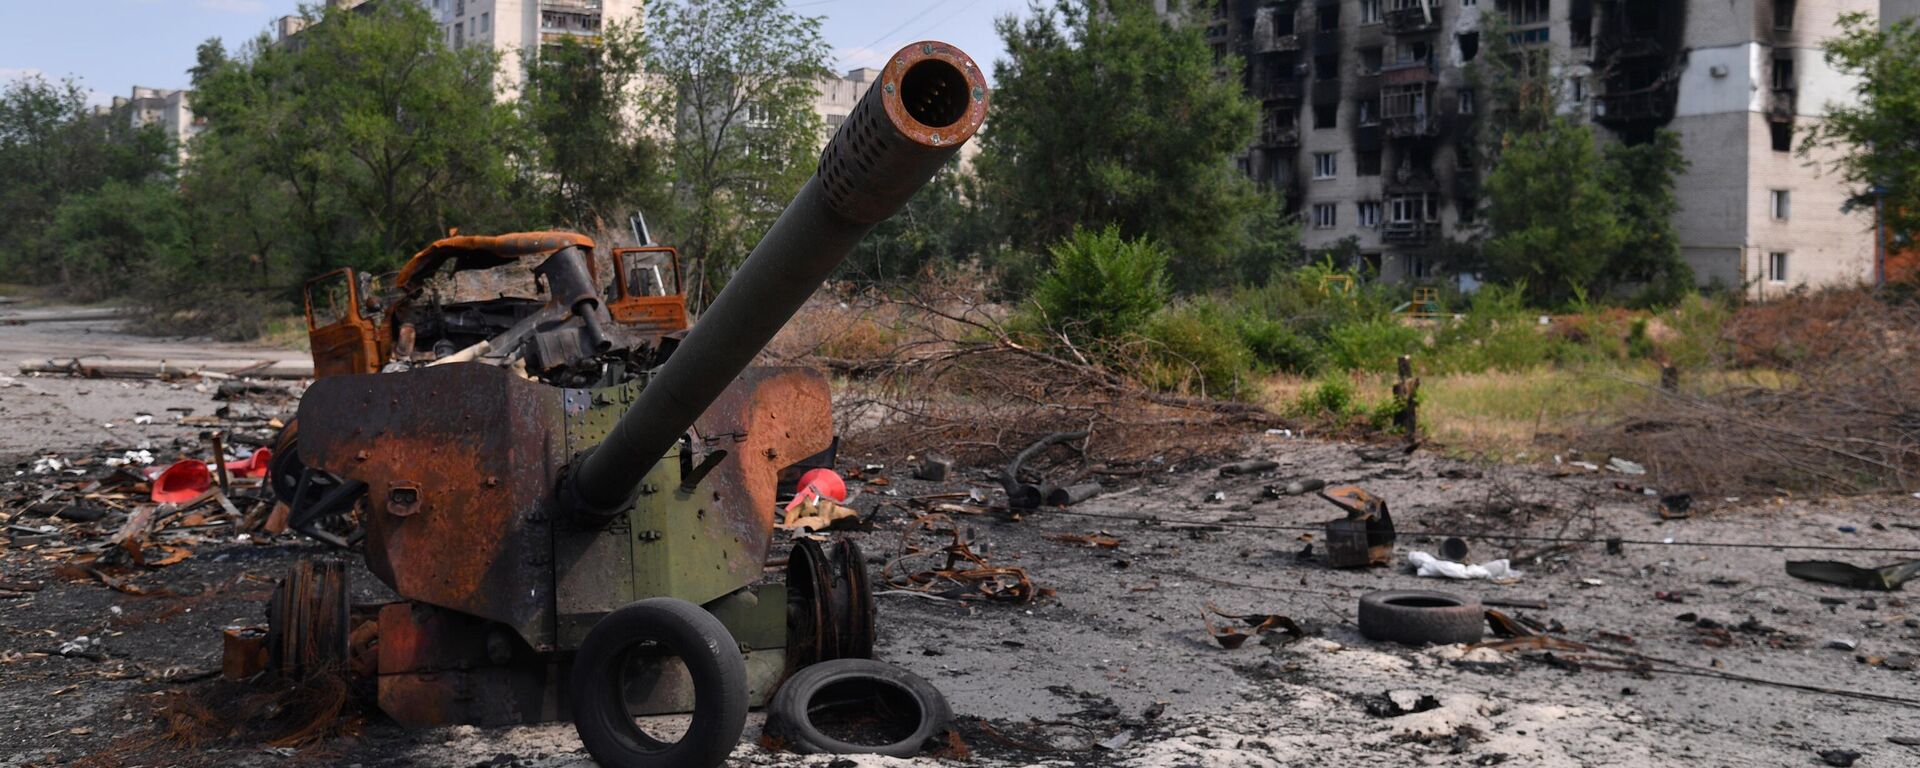 Arma de artilharia das Forças Armadas da Ucrânia destruída em Severodonetsk, no leste ucraniano, 11 de junho de 2022 - Sputnik Brasil, 1920, 19.10.2022